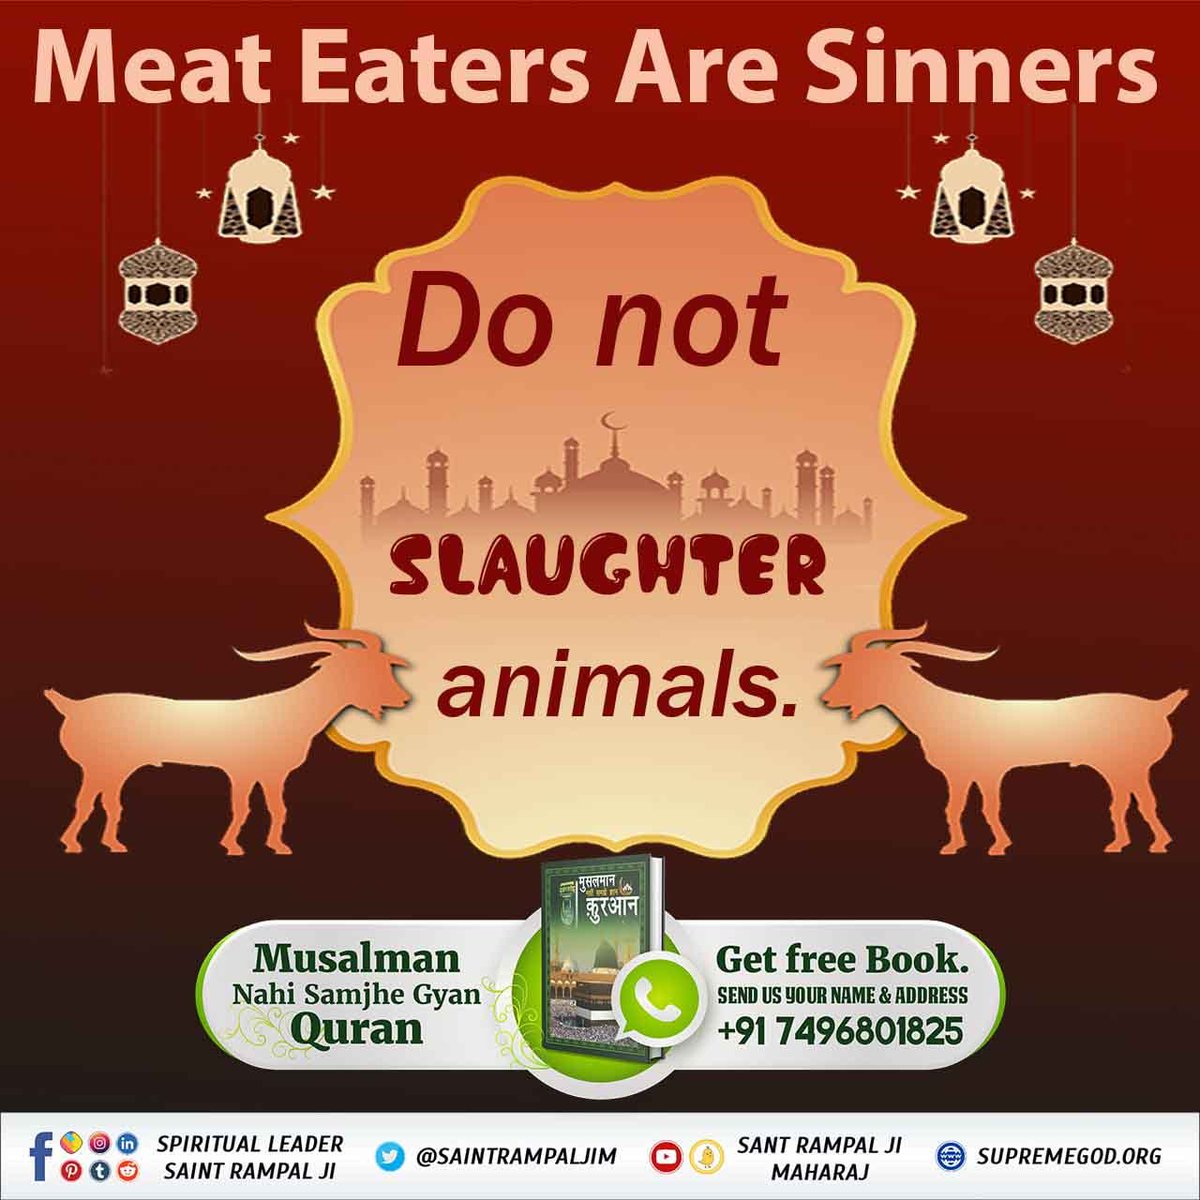 #रहम_करो_मूक_जीवों_पर
एक तरफ तो आप भक्ति करते हो, और दूसरी तरफ आप बेजुबान निर्दोष जानवरों की हत्या कर उनका मांस खाते हो। सभी जीव परमात्मा की प्यारी आत्मा है, तो फिर मांस खाने से परमात्मा प्राप्ति कैसे होगी......?
Musalman Nahi Samjhe Gyan Quran
#GodMorningFriday